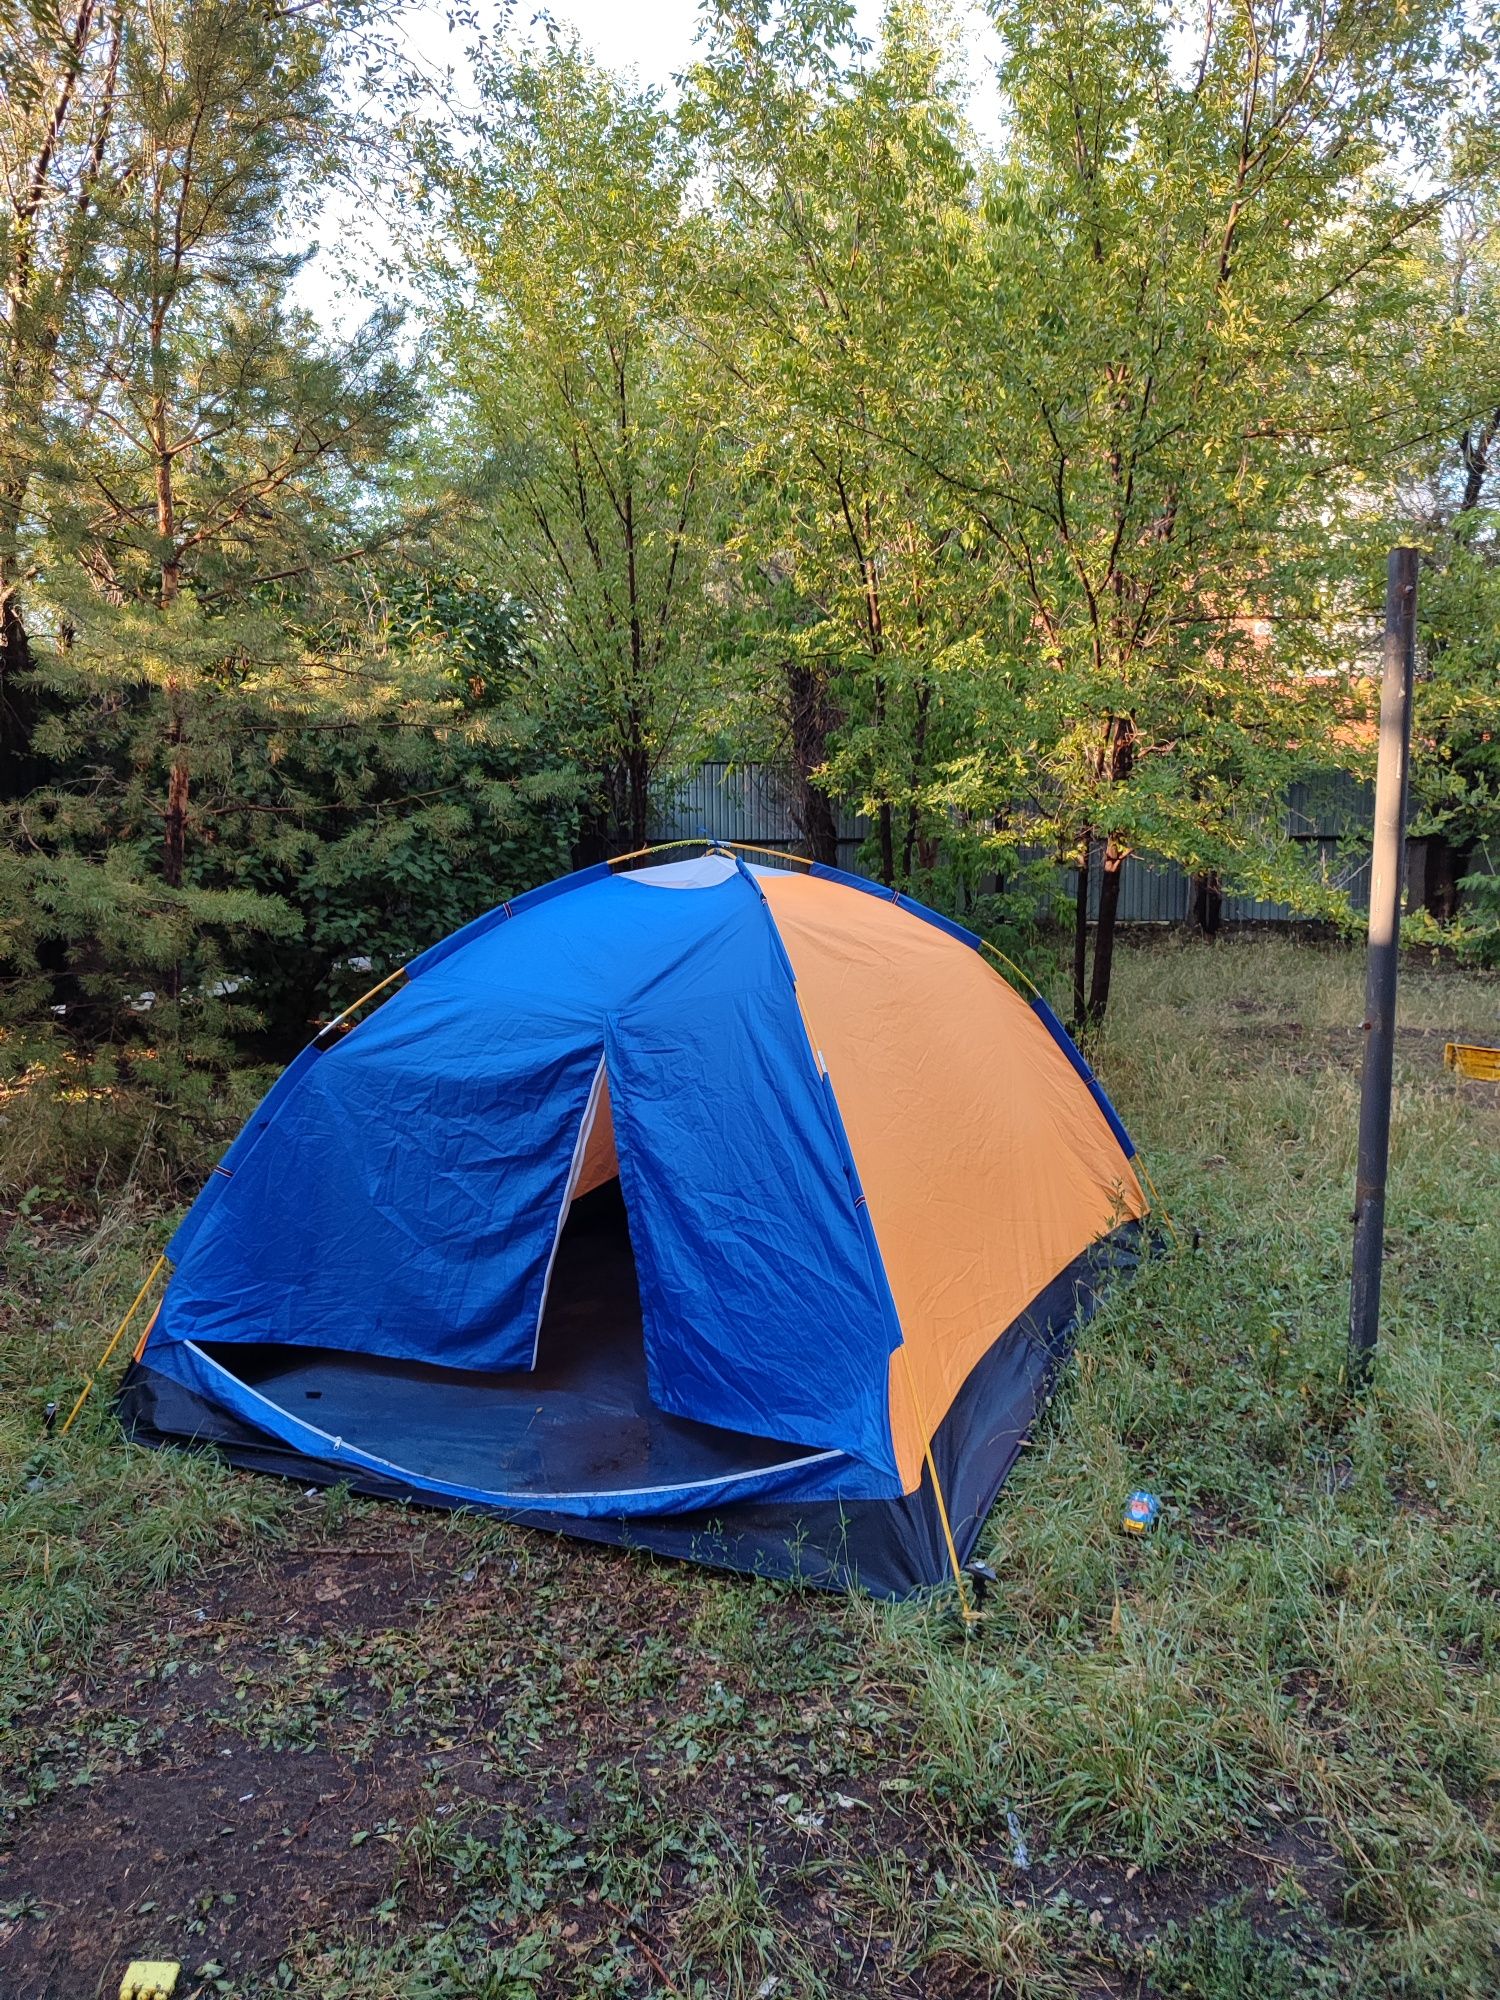 кемпинговая палатка